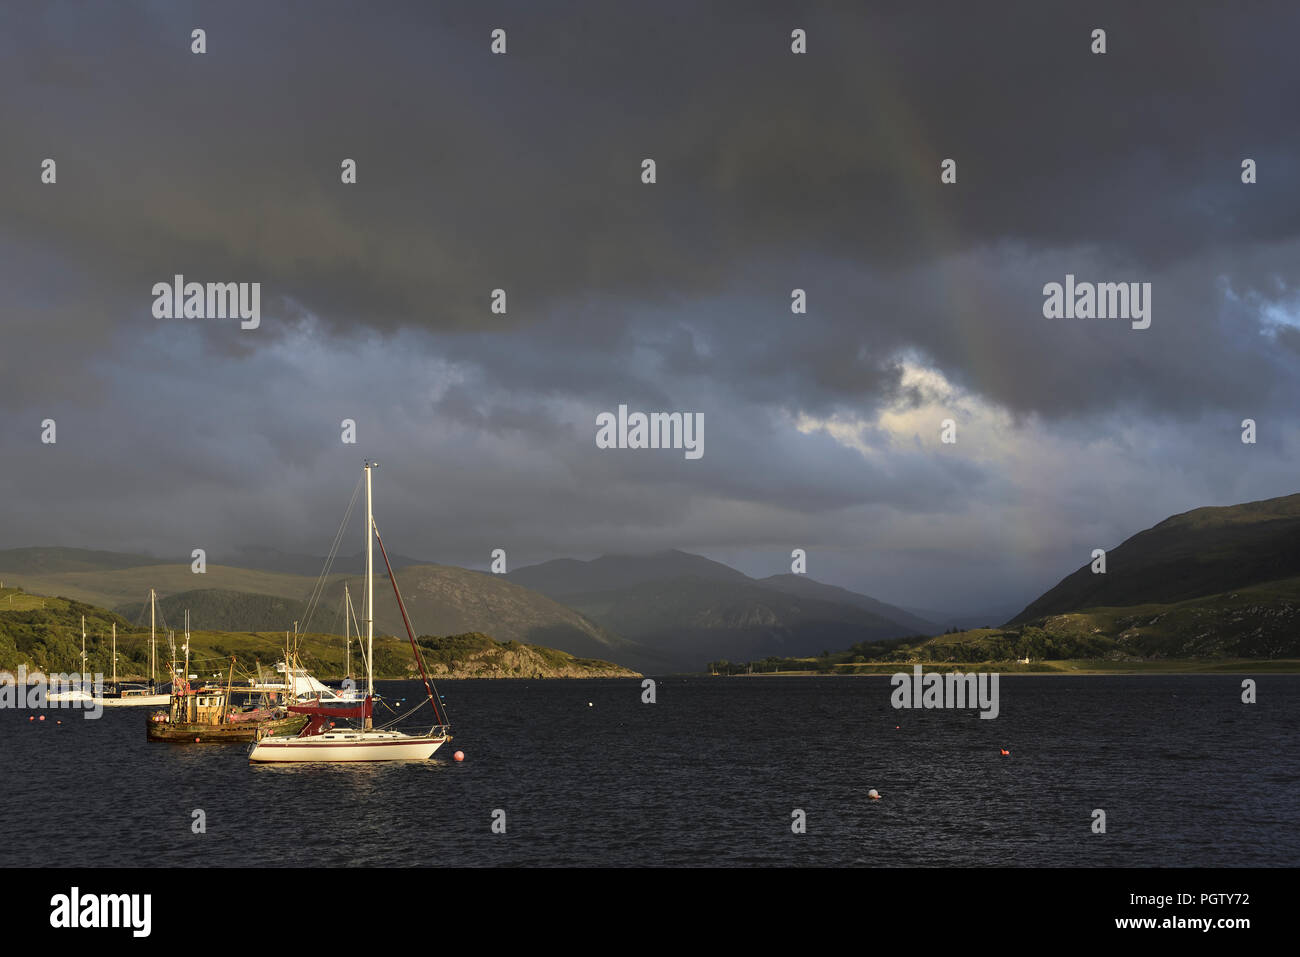 Il lungomare a Ullapool, nel nord della Scozia, con barche, nubi e un debole rainbow. In lontananza sono le montagne Fannich. Foto Stock